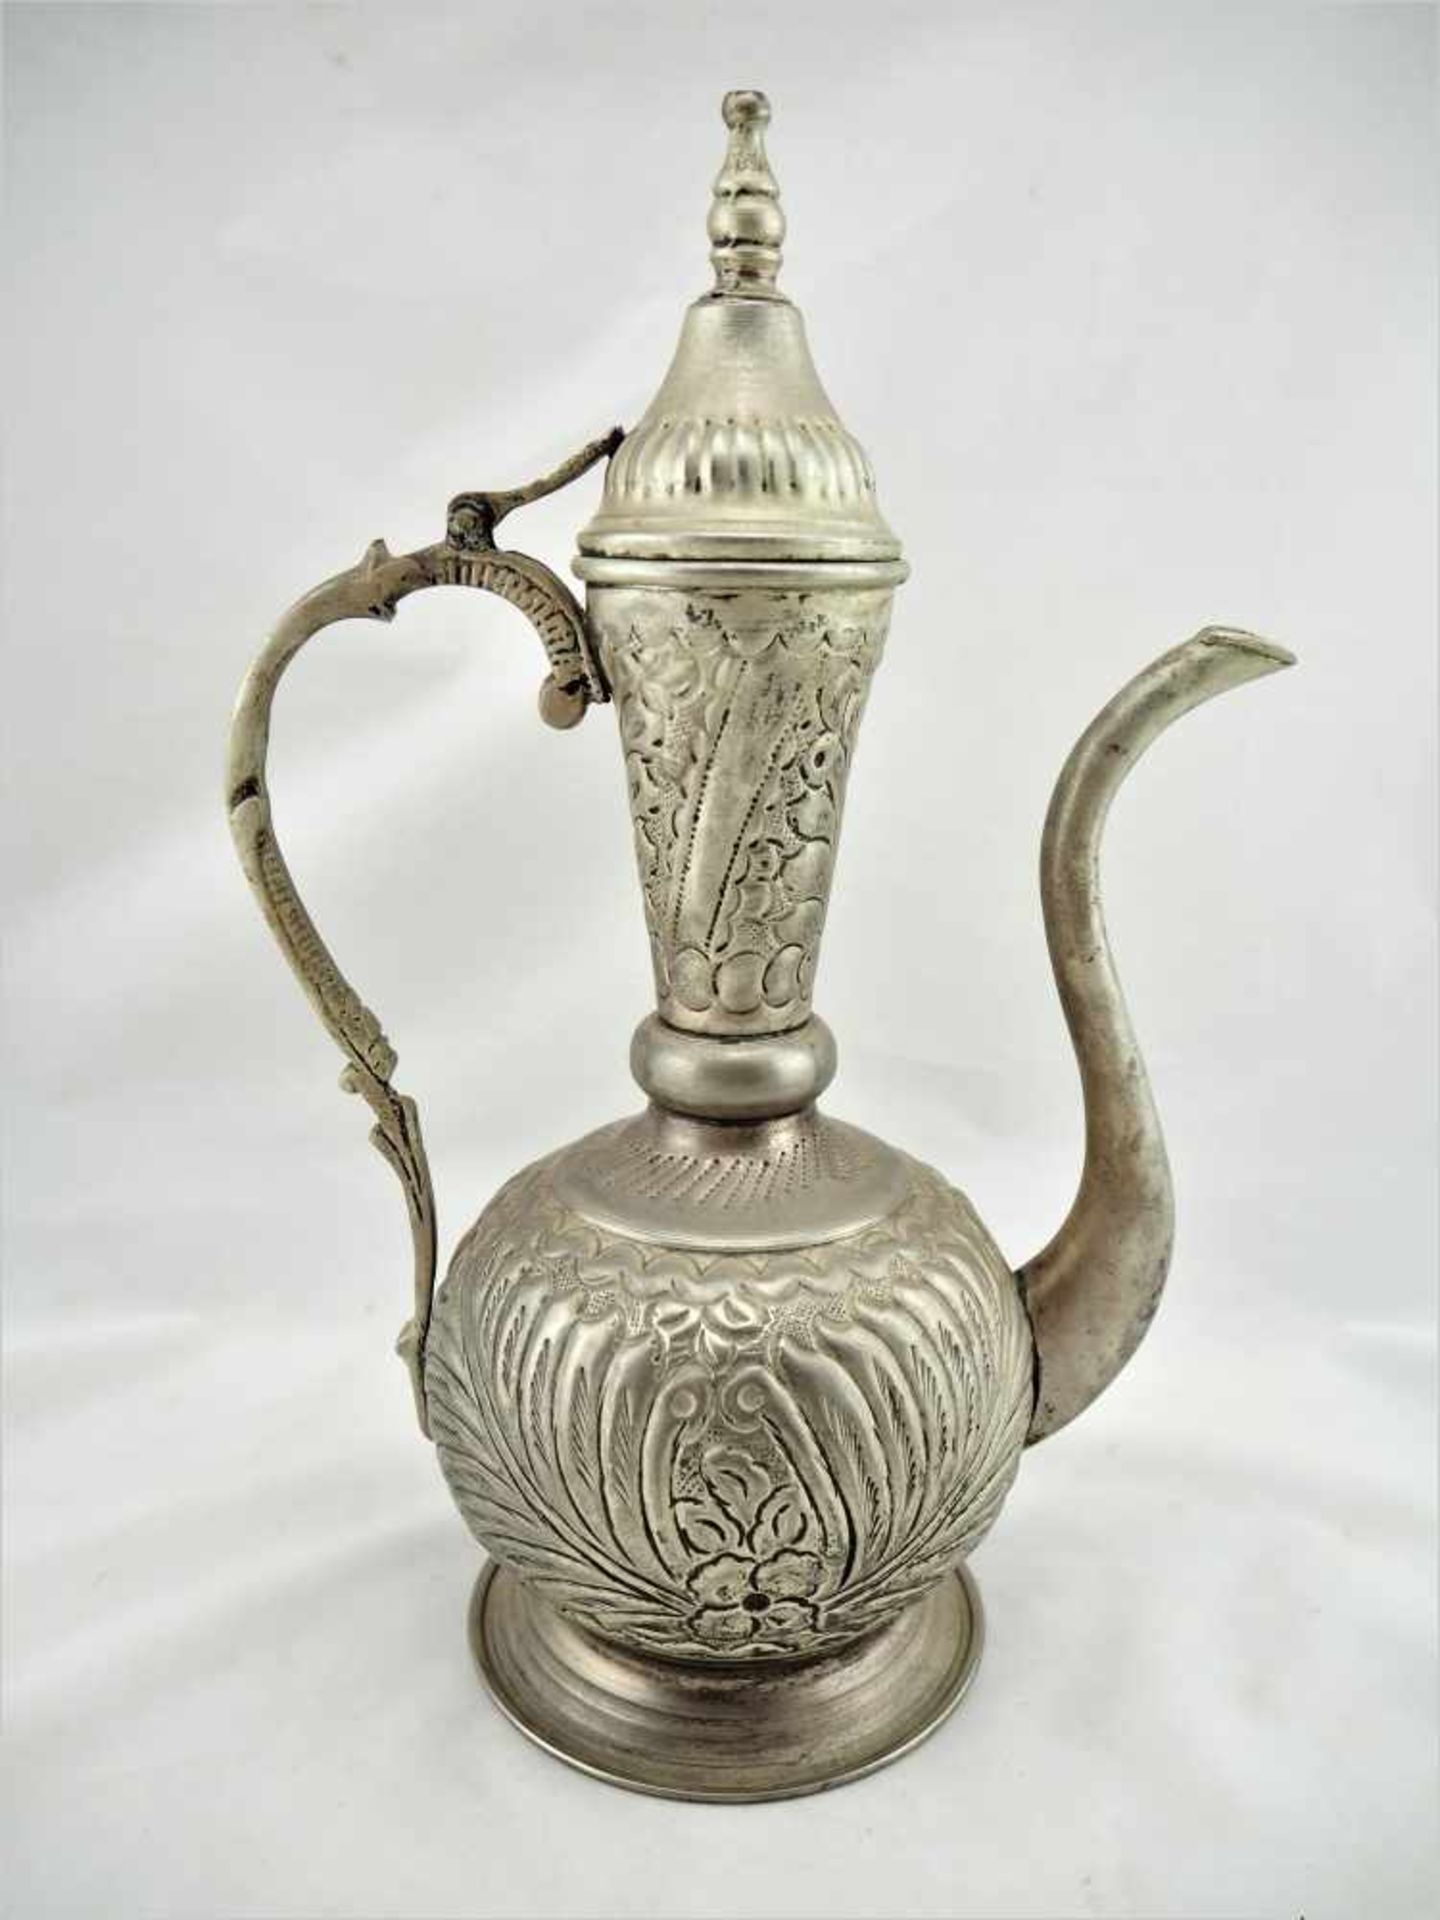 Persische Teekanne, Anf. 20.Jhd.Aus Weißmetall gefertigt. Reich verziert mit Blumen und Ranken.